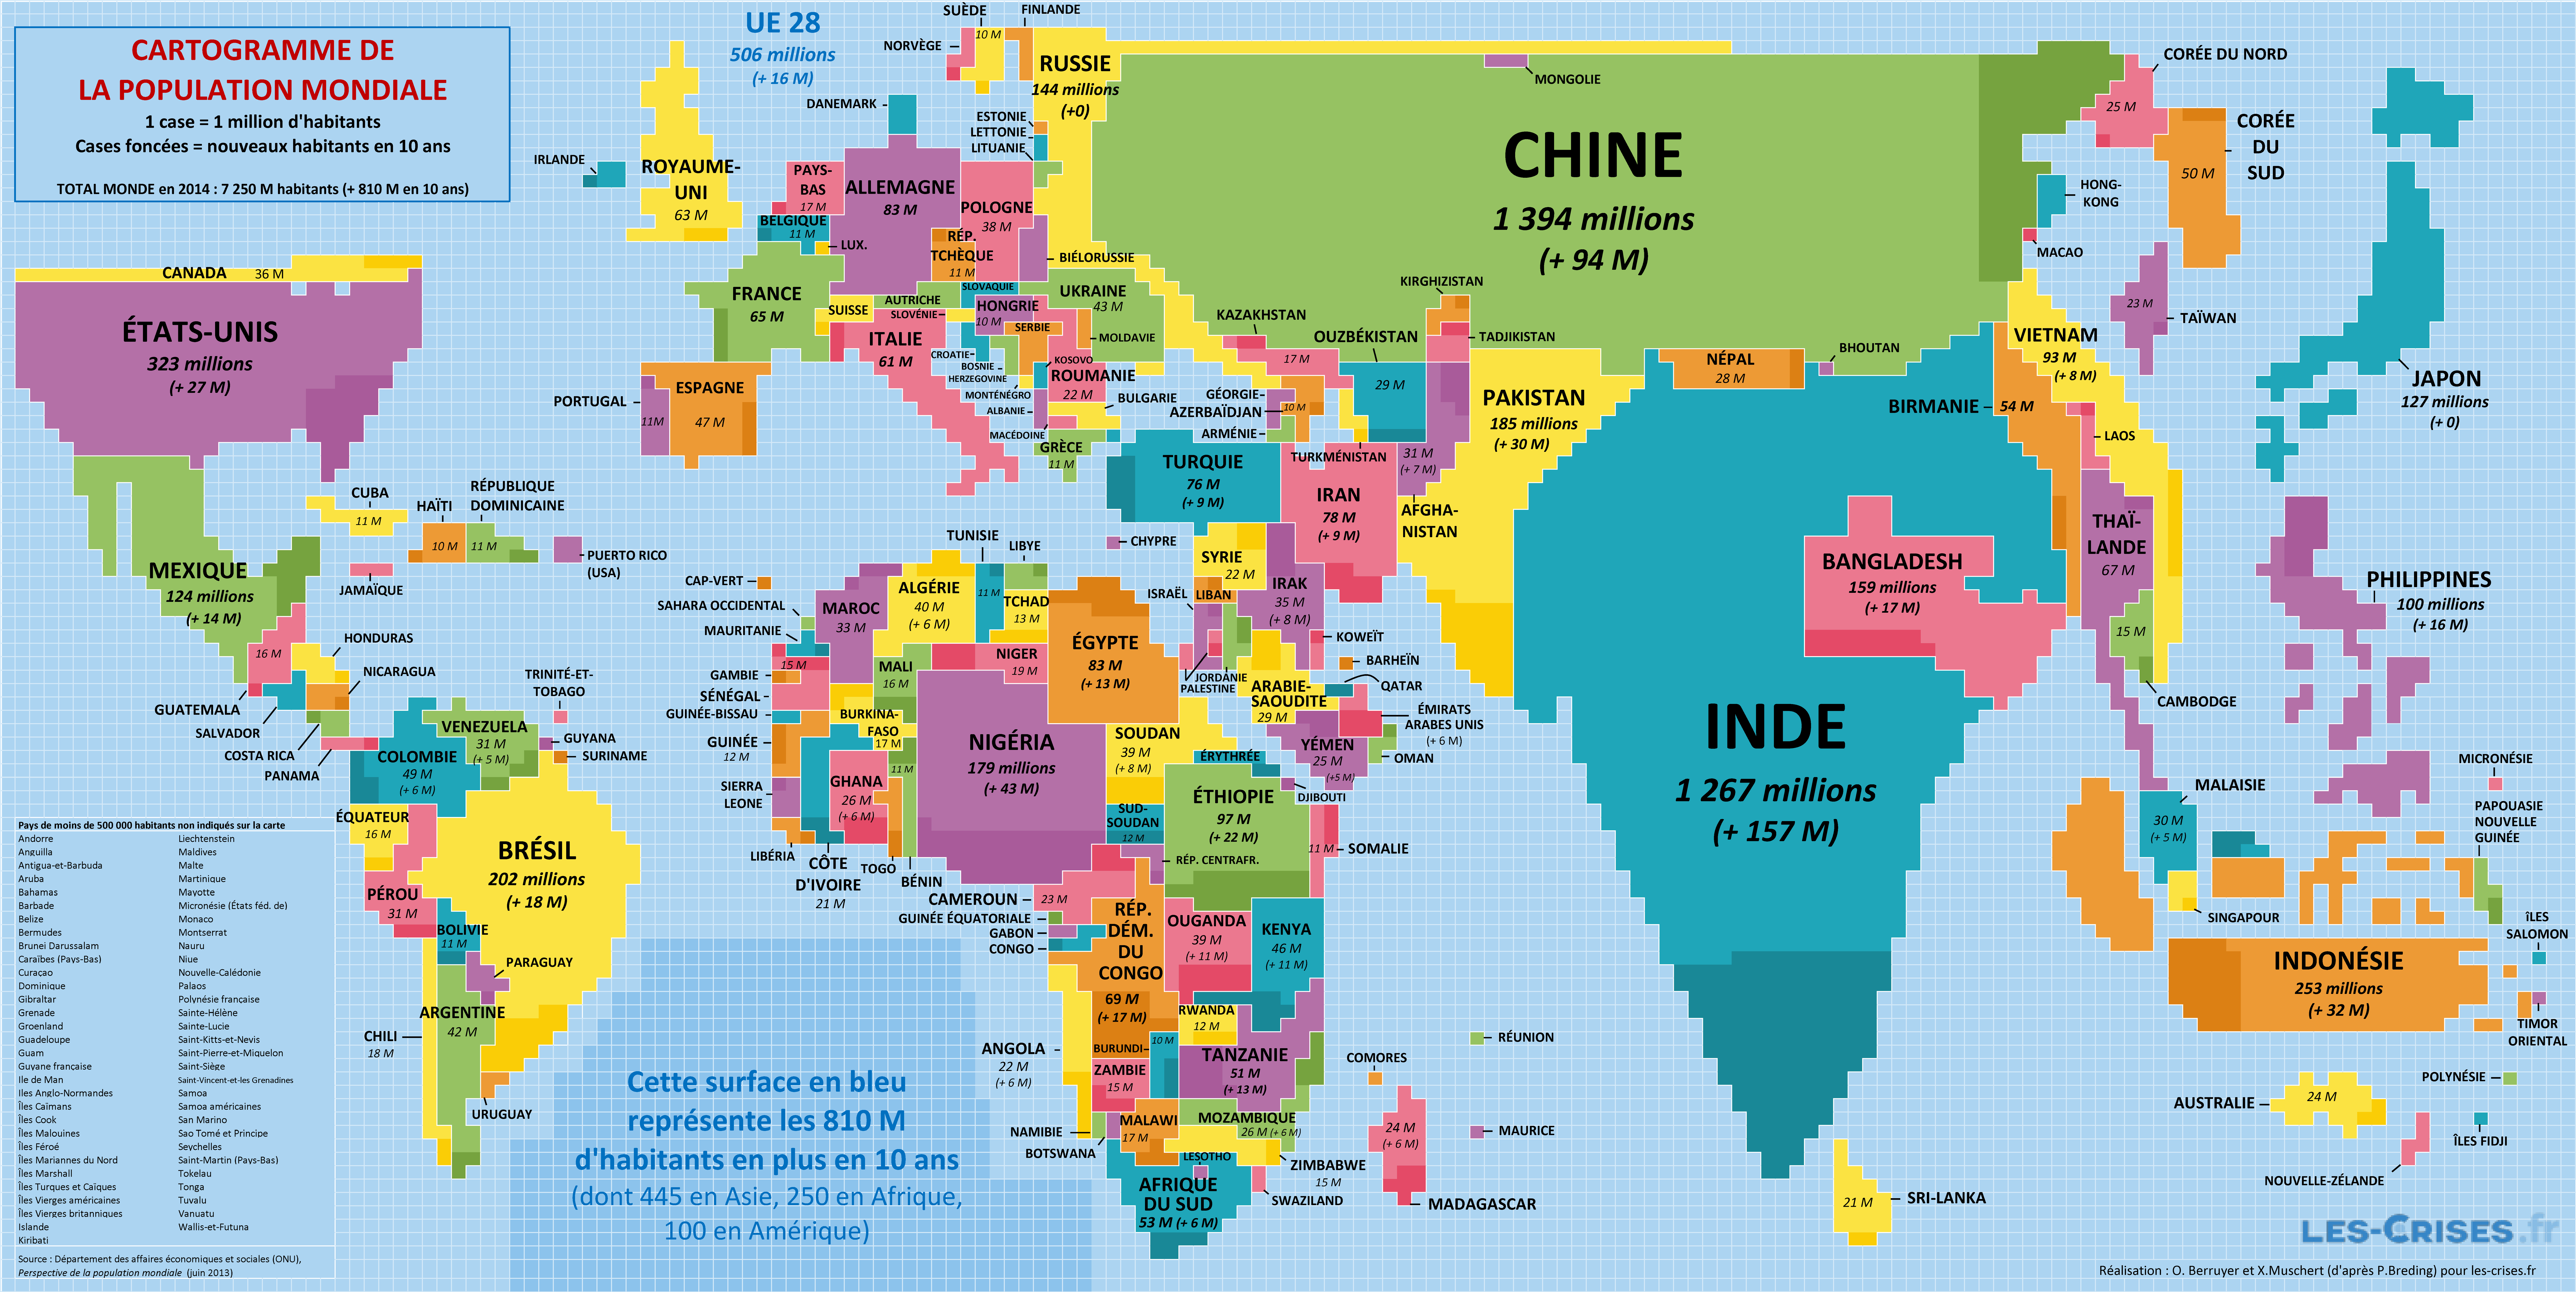 » Cartogramme de la Population Mondiale